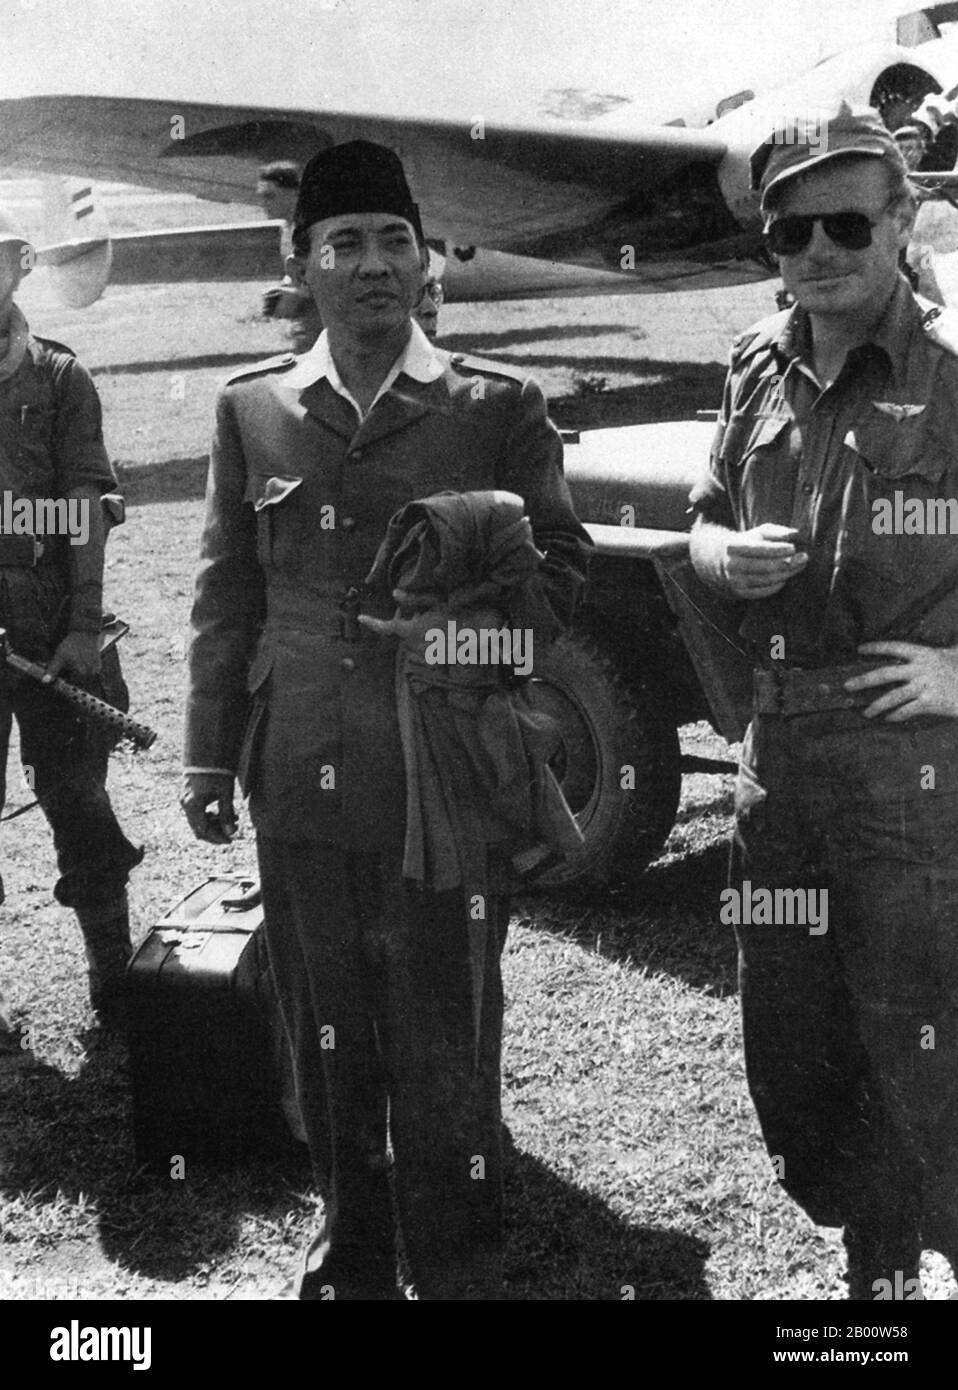 Indonésie: Le président Sukarno est arrêté par les pays-Bas en janvier 1949. Un an plus tard, il retournerait à Jakarta en triomphe. Sukarno est né le 6 juin 1901 à Blaitar, dans l'est de Java. Son nom était Kushno Sosrodihardjo, mais il a été renommé, selon la coutume javanaise, après avoir survécu à une maladie infantile. Son nom est souvent orthographié Soekarno après l'orthographe néerlandaise. Le 4 juillet 1927, Sukarno et quelques amis ont fondé le Partai Nasional Indonesia (PNI) en vue de lutter pour l'indépendance indonésienne. Sukarno a été condamné en tant que prisonnier politique en 1930, mais a été libéré en 1931. Banque D'Images